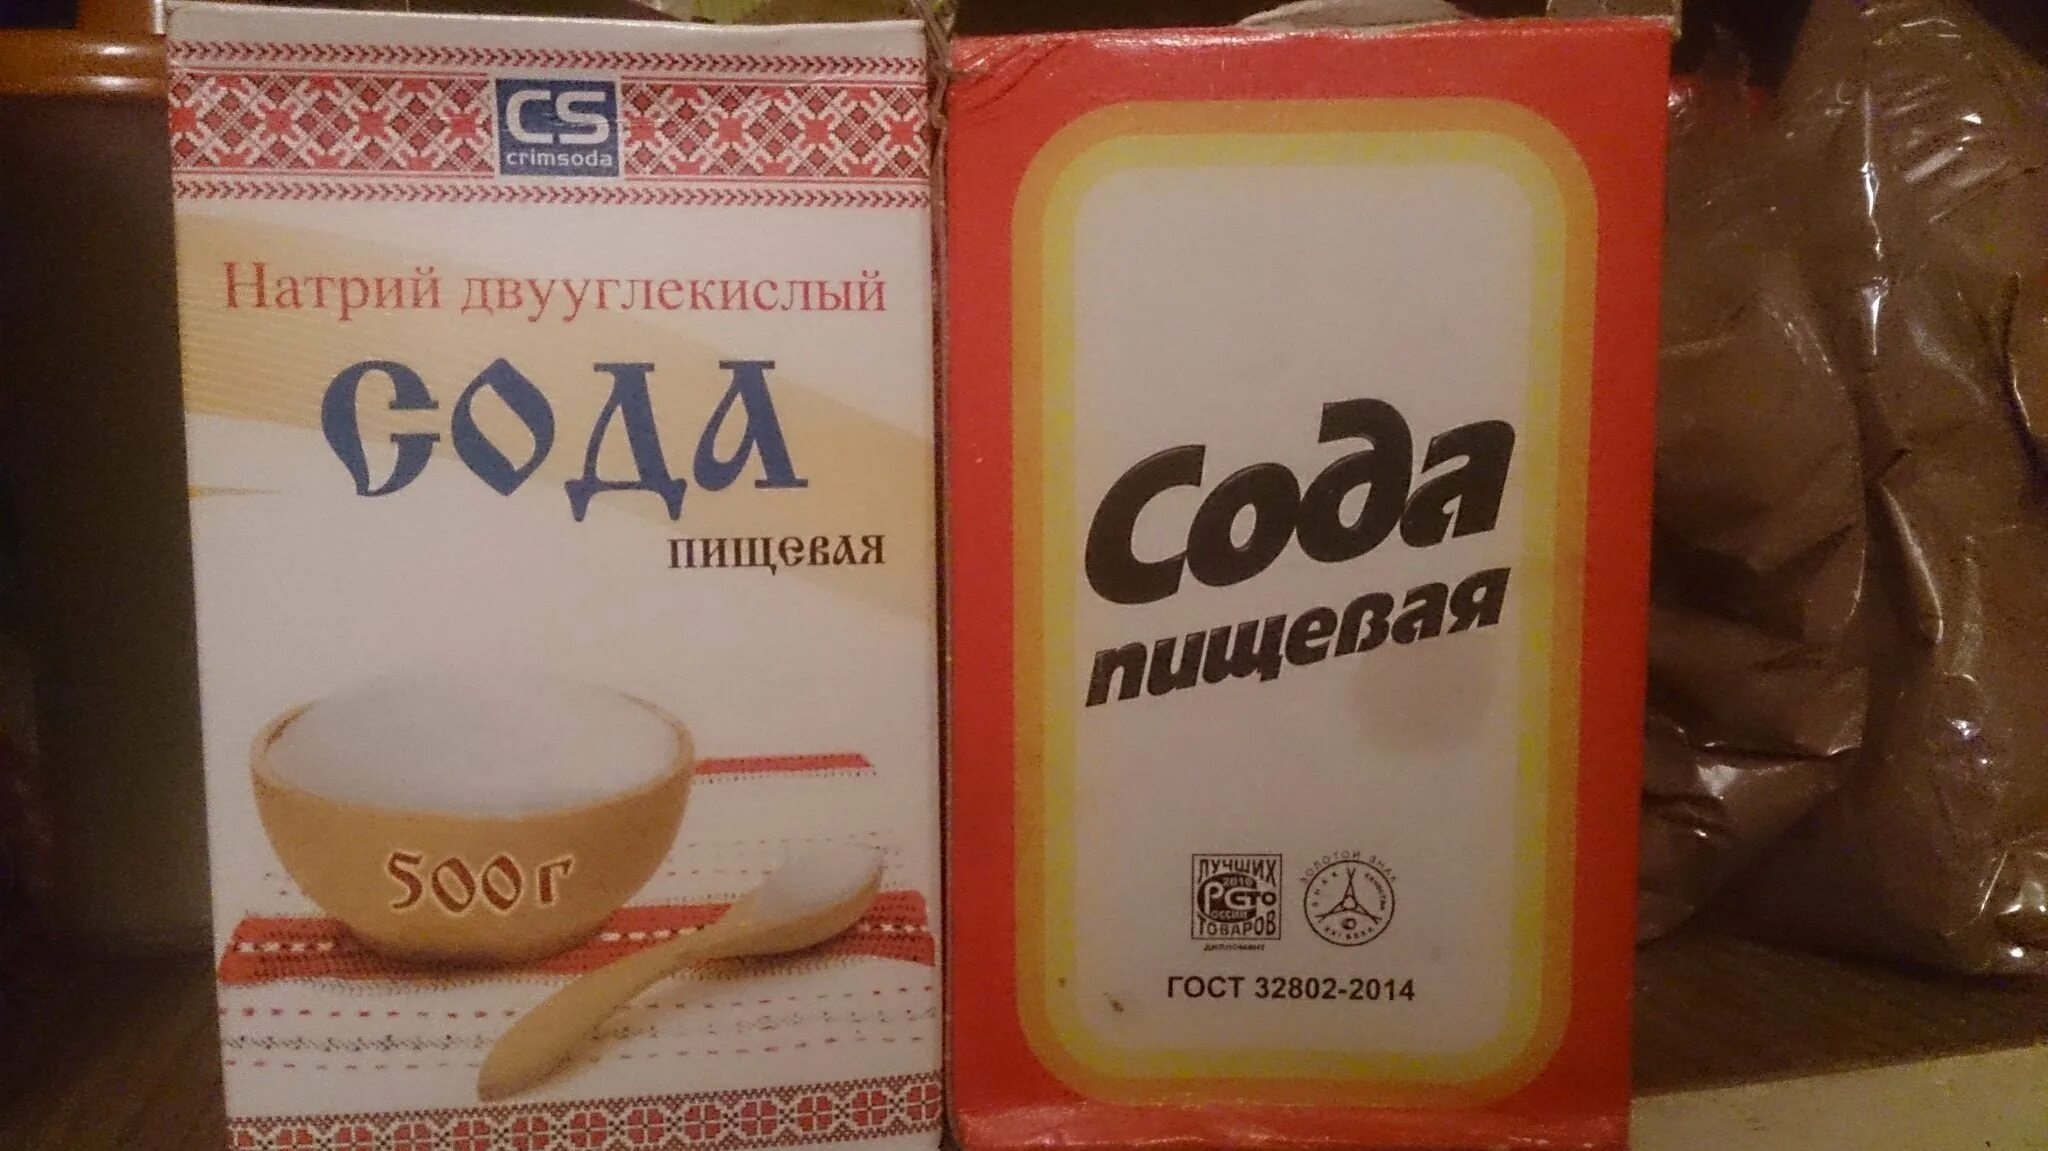 Сода лав. Сода ЛВА. Сода упаковка. Сода пищевая Советская упаковка. Сода лав напиток